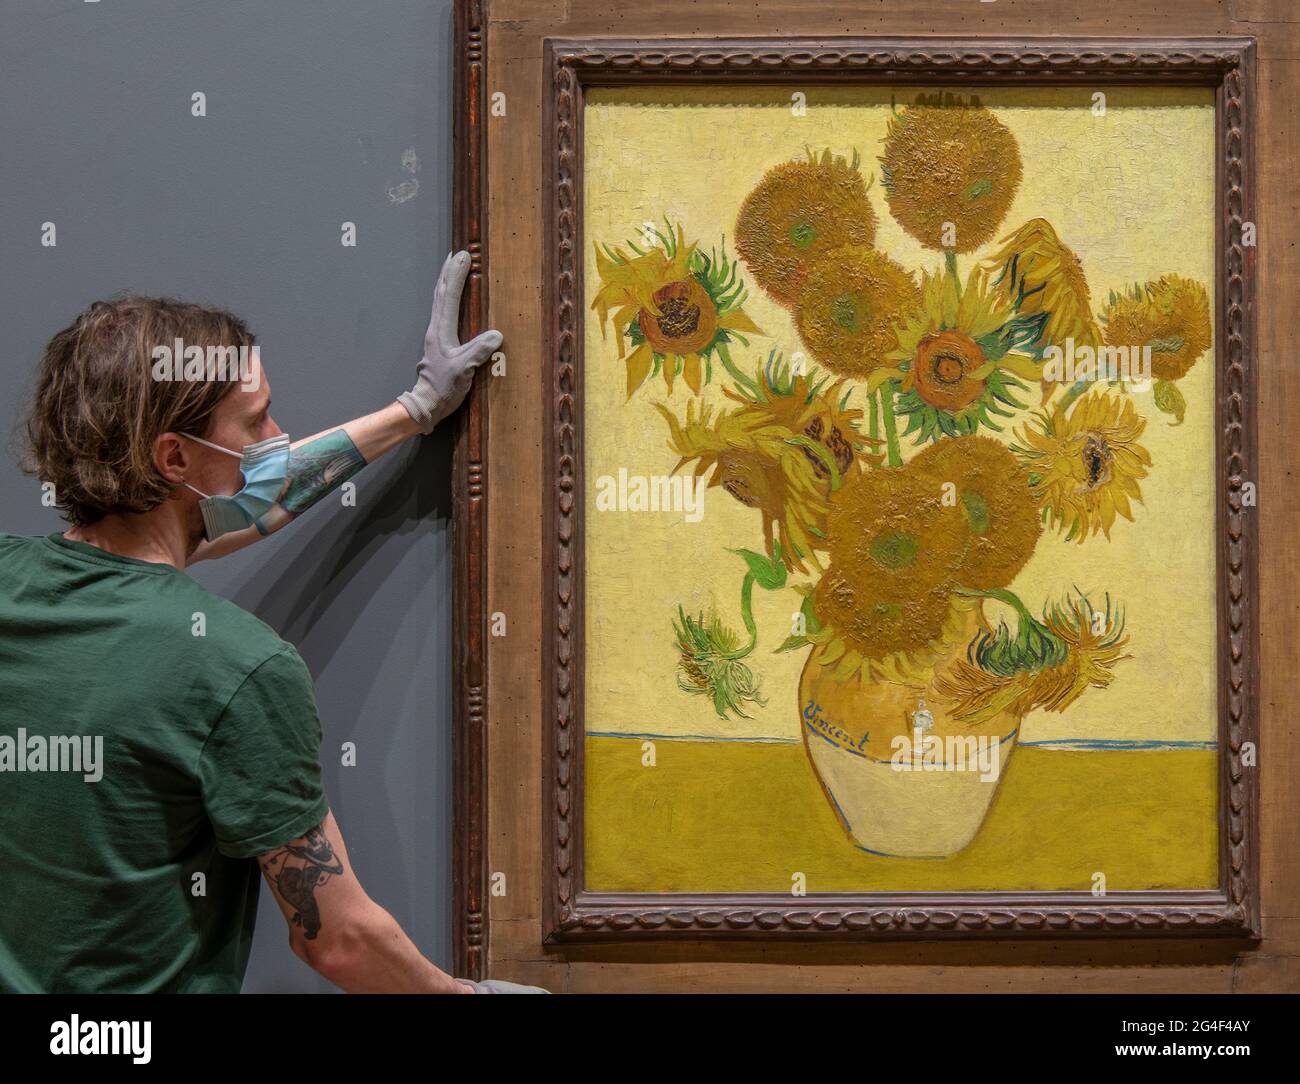 The National Gallery, London, Großbritannien. 21. Juni 2021. Kunsthändler der National Gallery hängen die Vincent van Gogh Sonnenblumen, gemalt 1888, am frühen Montagmorgen, dem 21. Juni, der Sommersonnenwende, vor der Eröffnung der Galerie. Das Van Gogh-Meisterwerk ist nach einer 16-monatigen Welttournee nach Japan und Australien in die Galerie gekommen. Quelle: Malcolm Park/Alamy Live News. Stockfoto